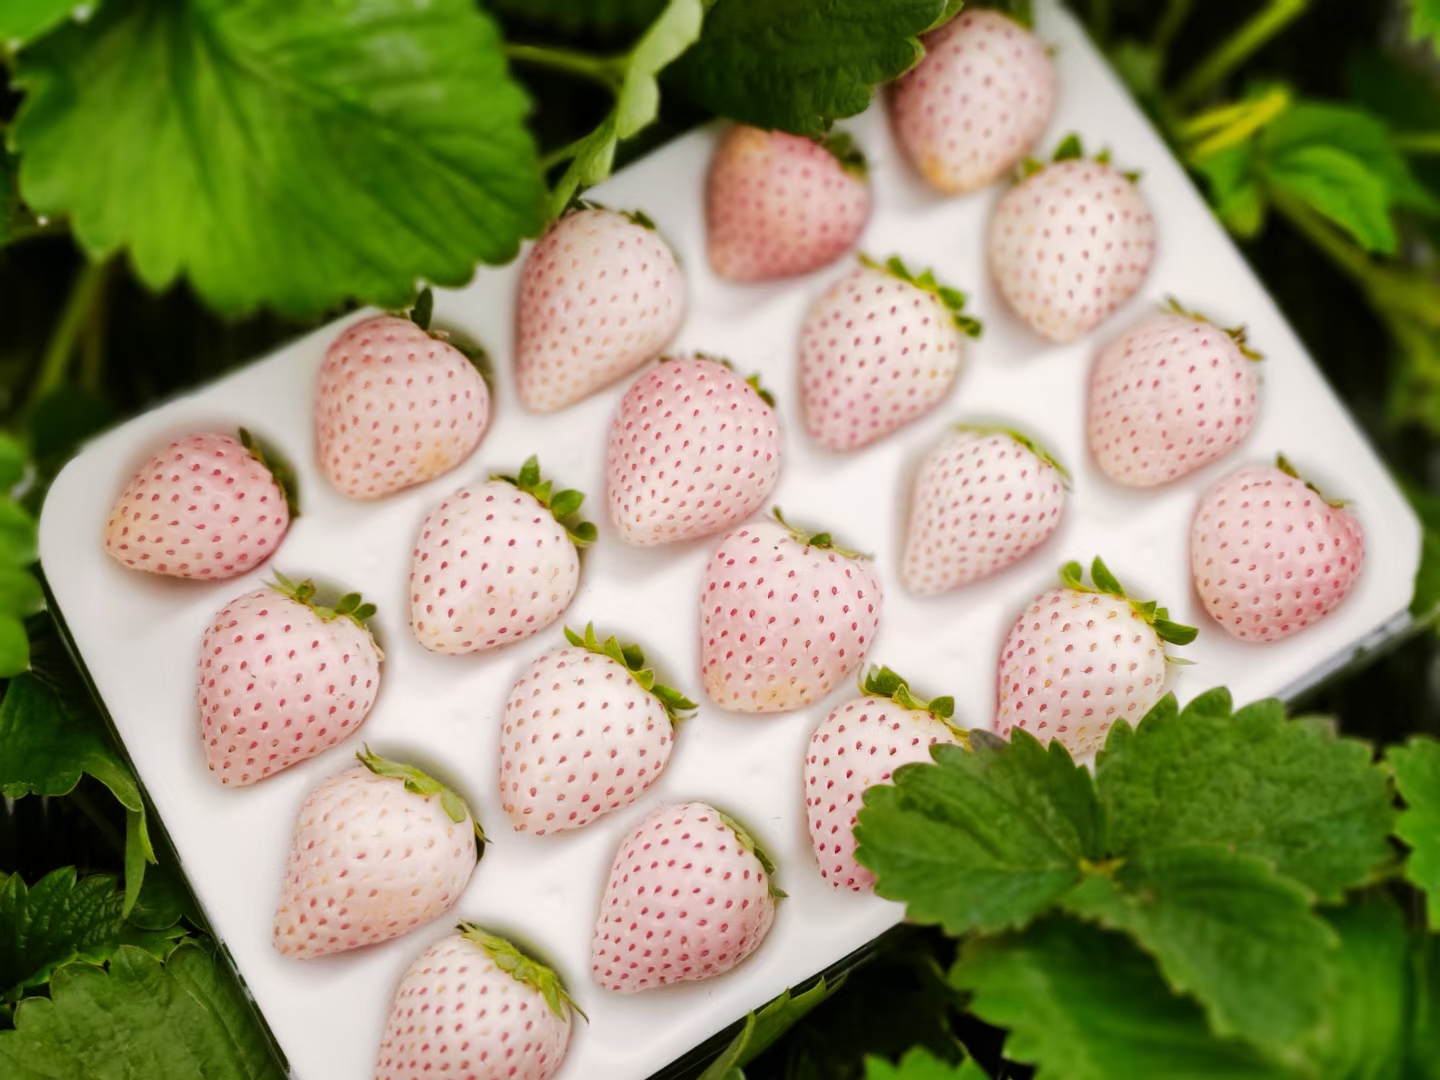 平度市淡雪草莓 白草莓—天使，淡雪，粉玉，百蜜香。产地直销，商超供